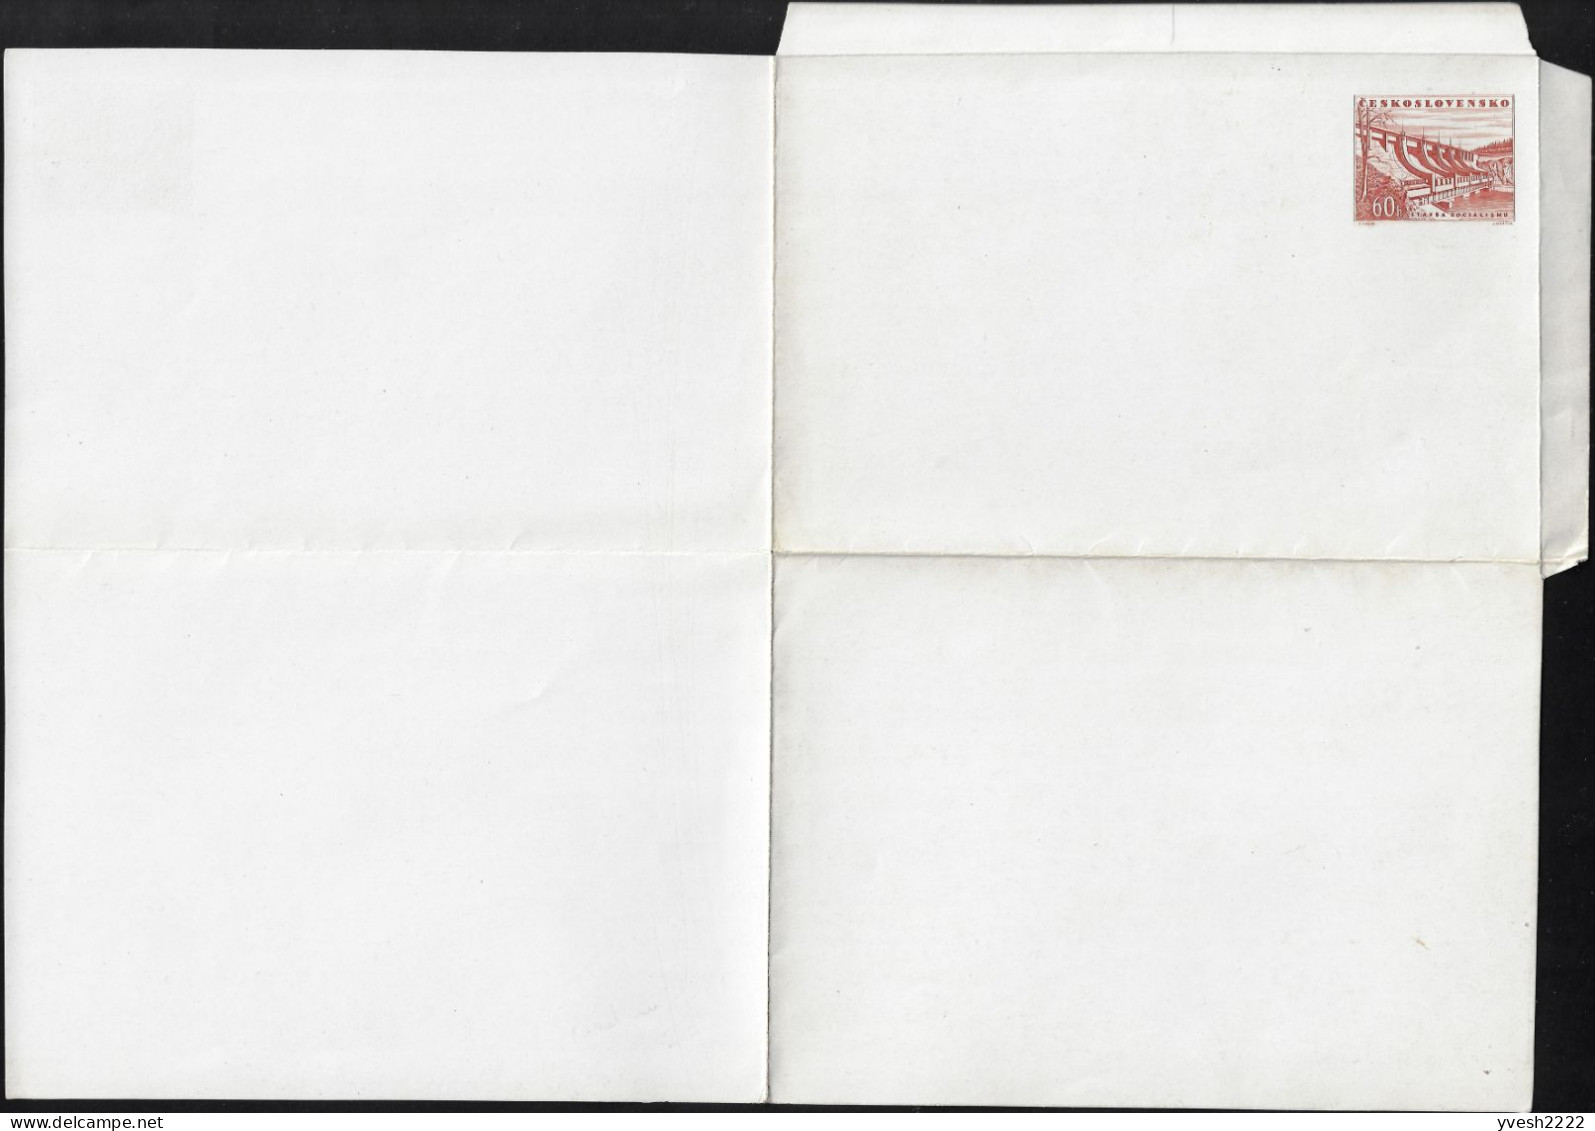 Tchécoslovaquie 1953 Michel F1b ??? Carte-lettre Sans La Moindre Inscription, Papier Craie. Barrage Communiste - Acqua